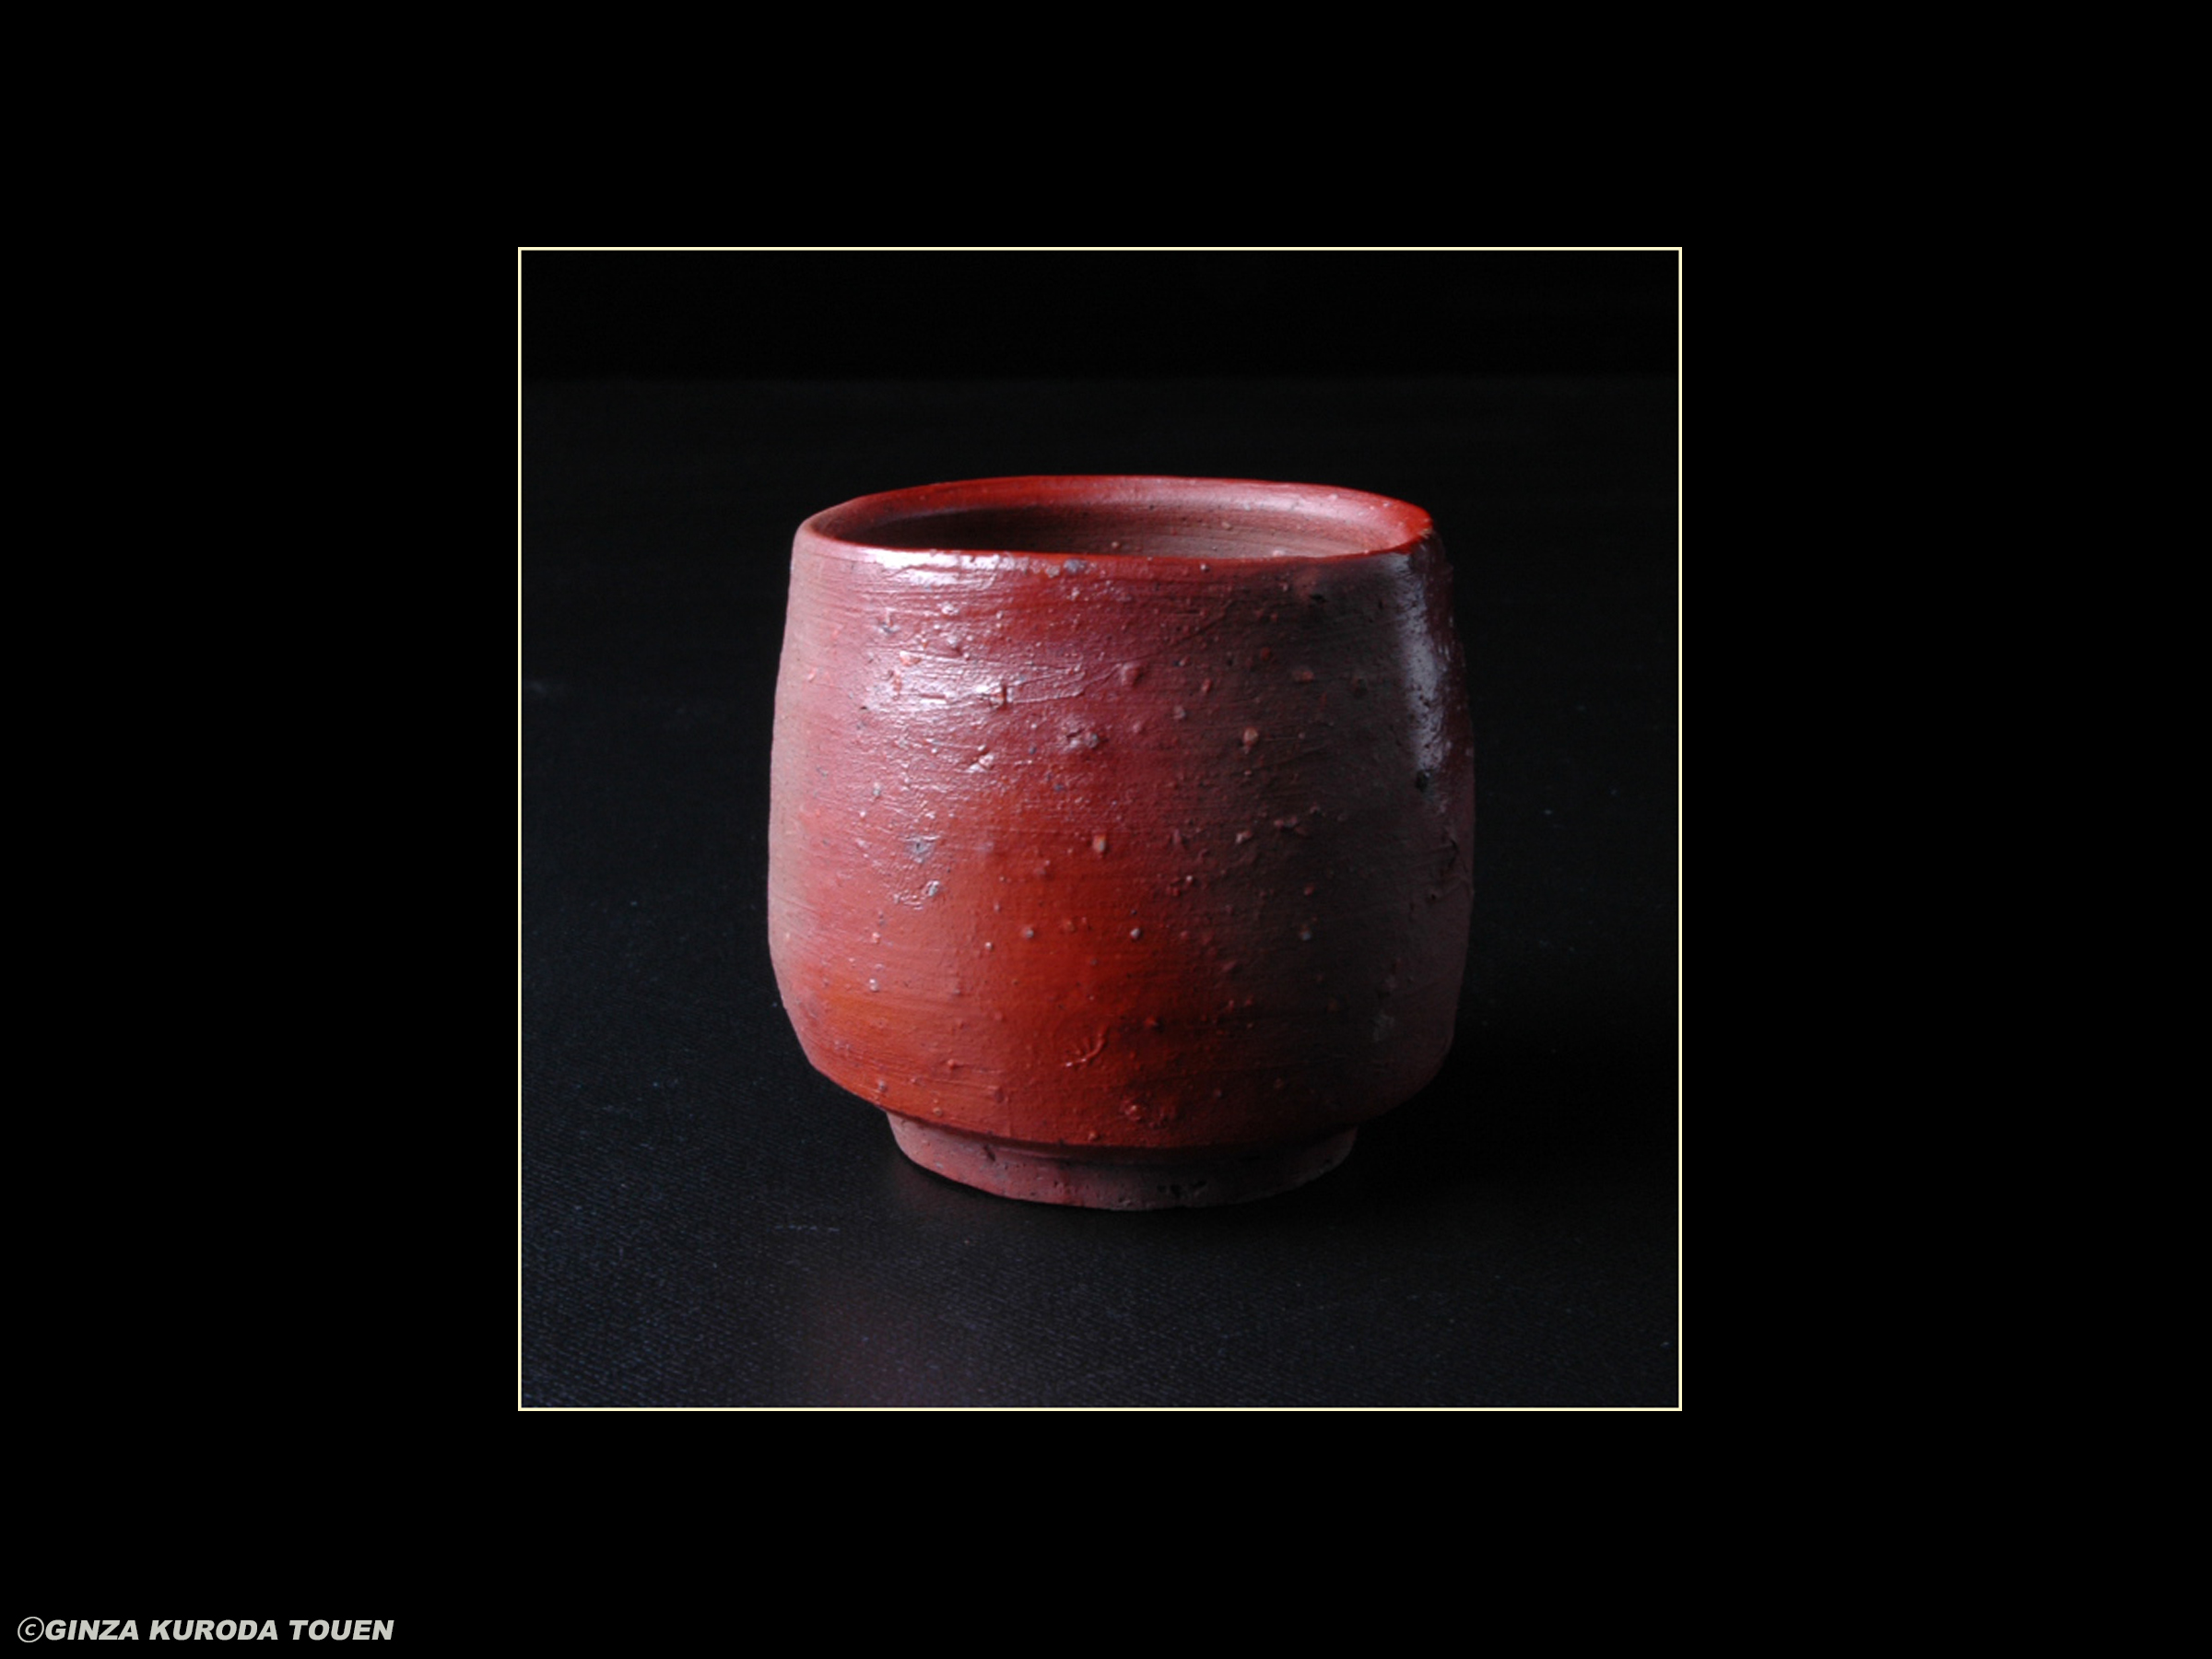 Toyo Kaneshige: Sake cup, Bizen type